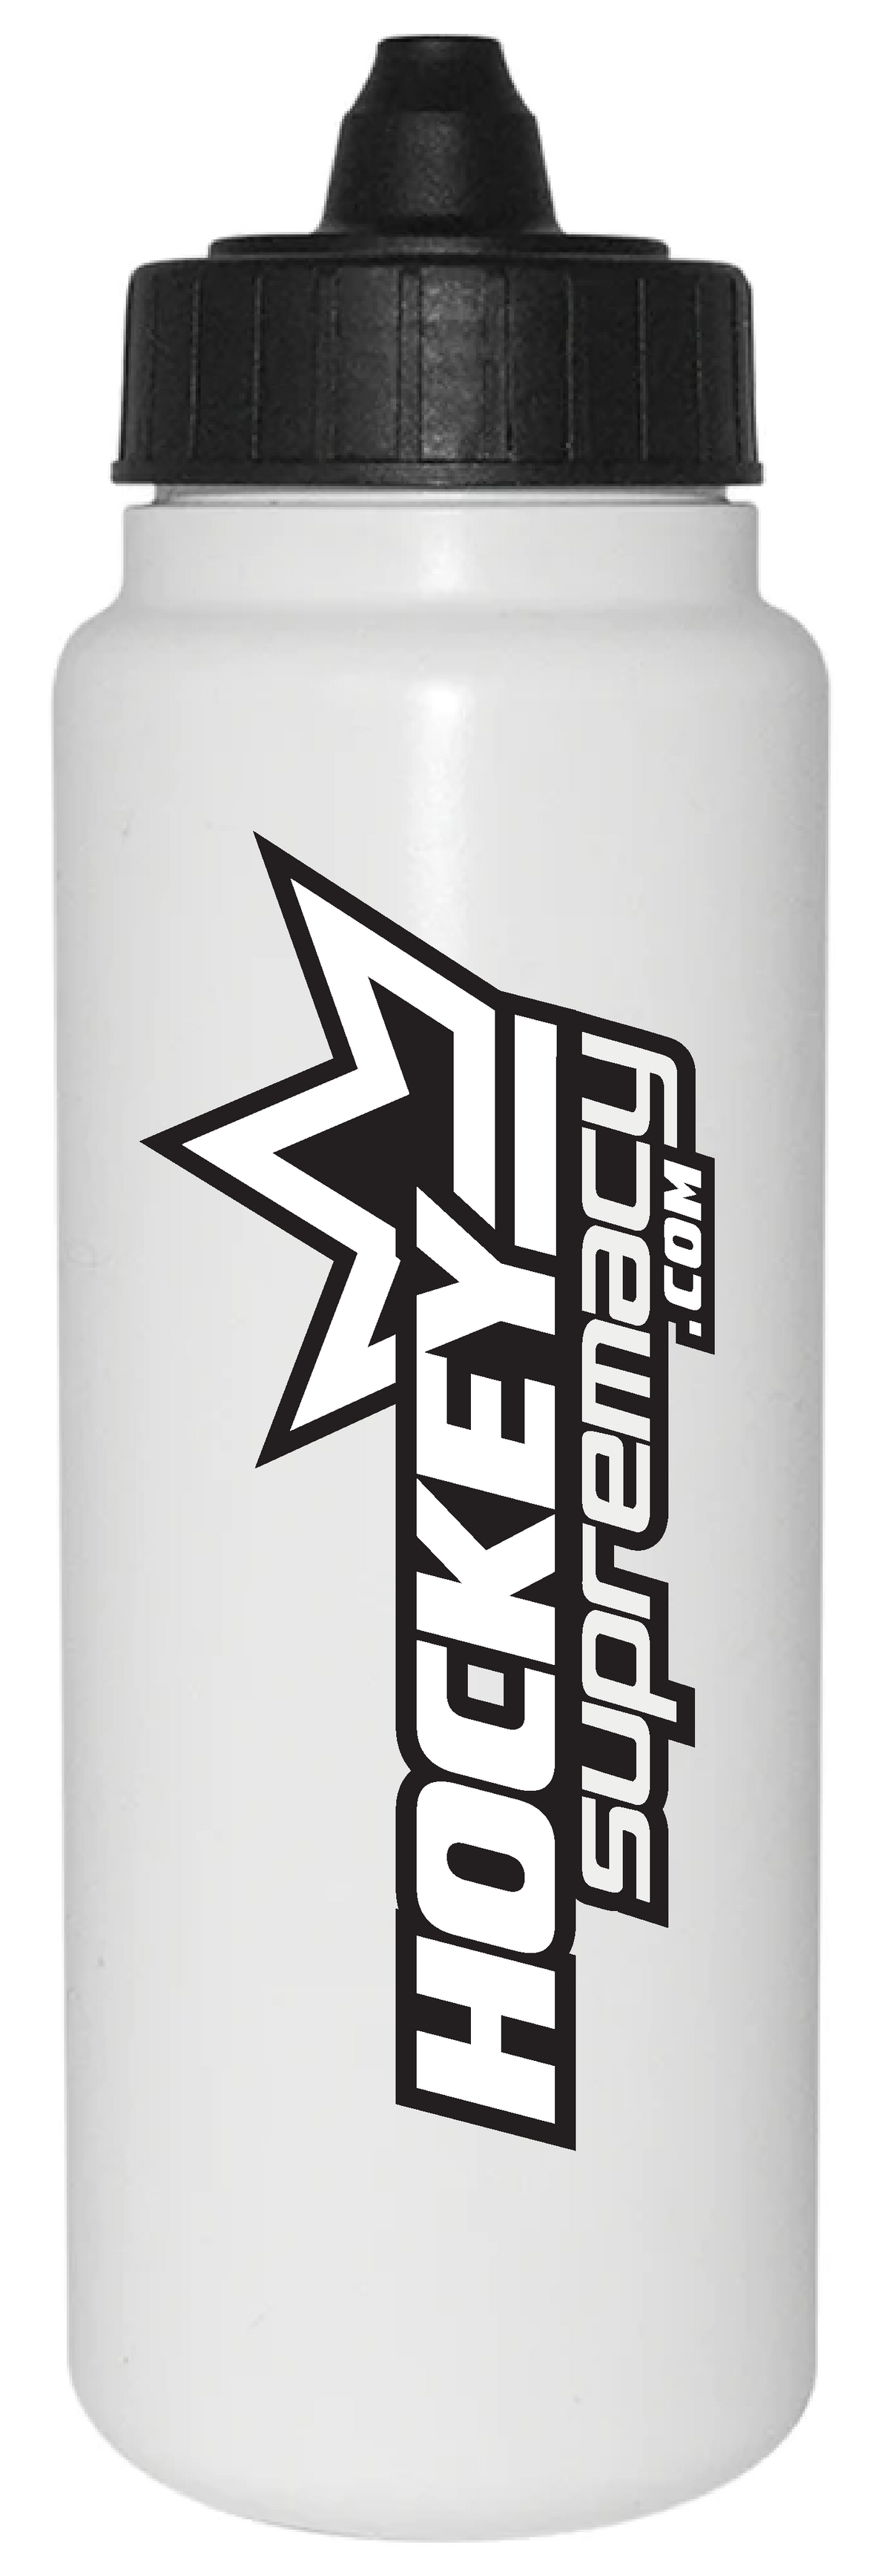 HockeySupremacy.com Tallboy Water Bottle (Black/White)